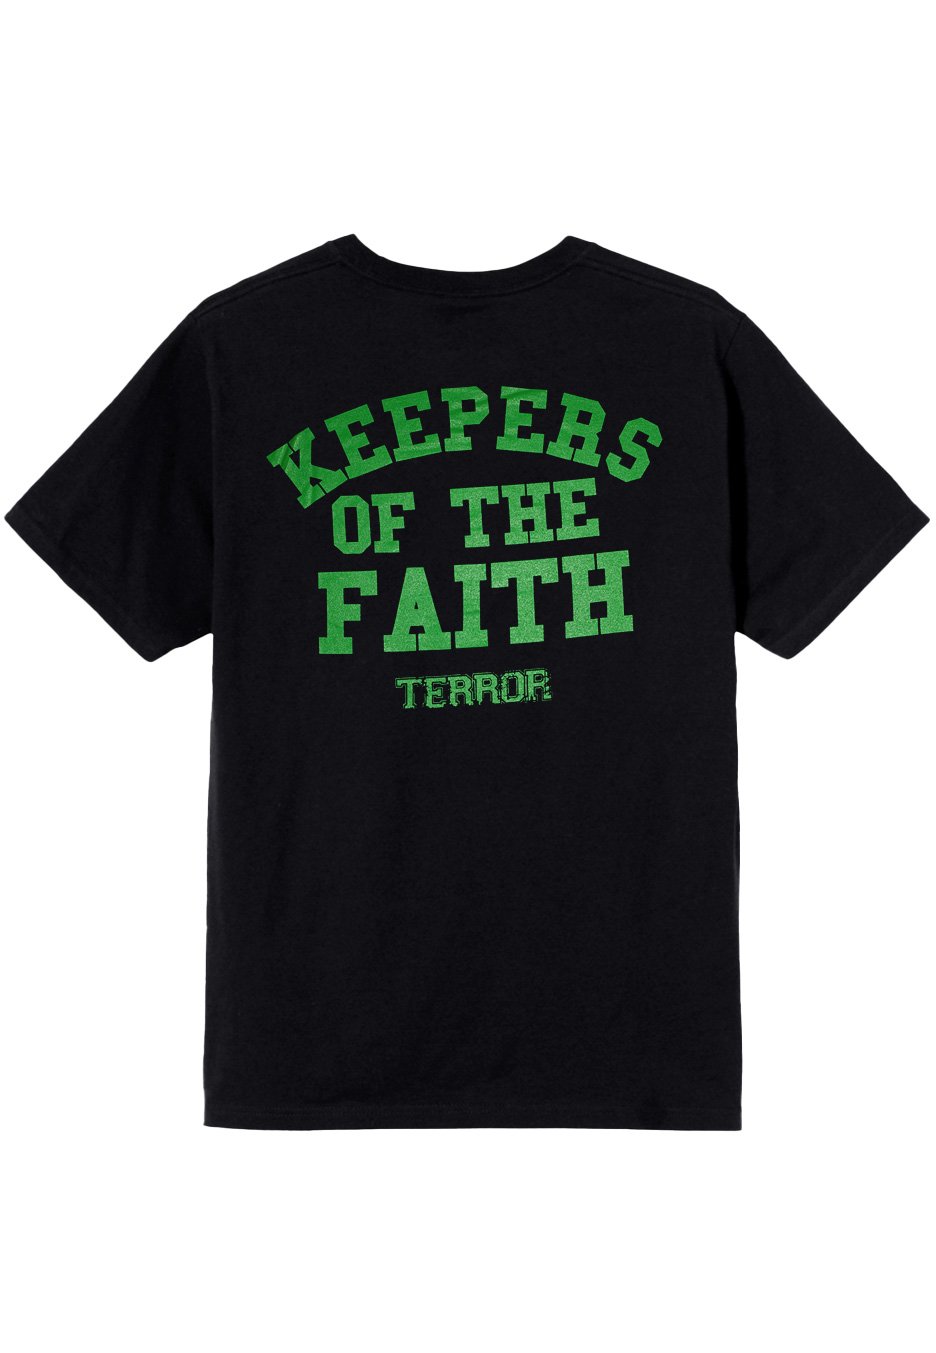 Terror - Green KOTF 2022 - T-Shirt